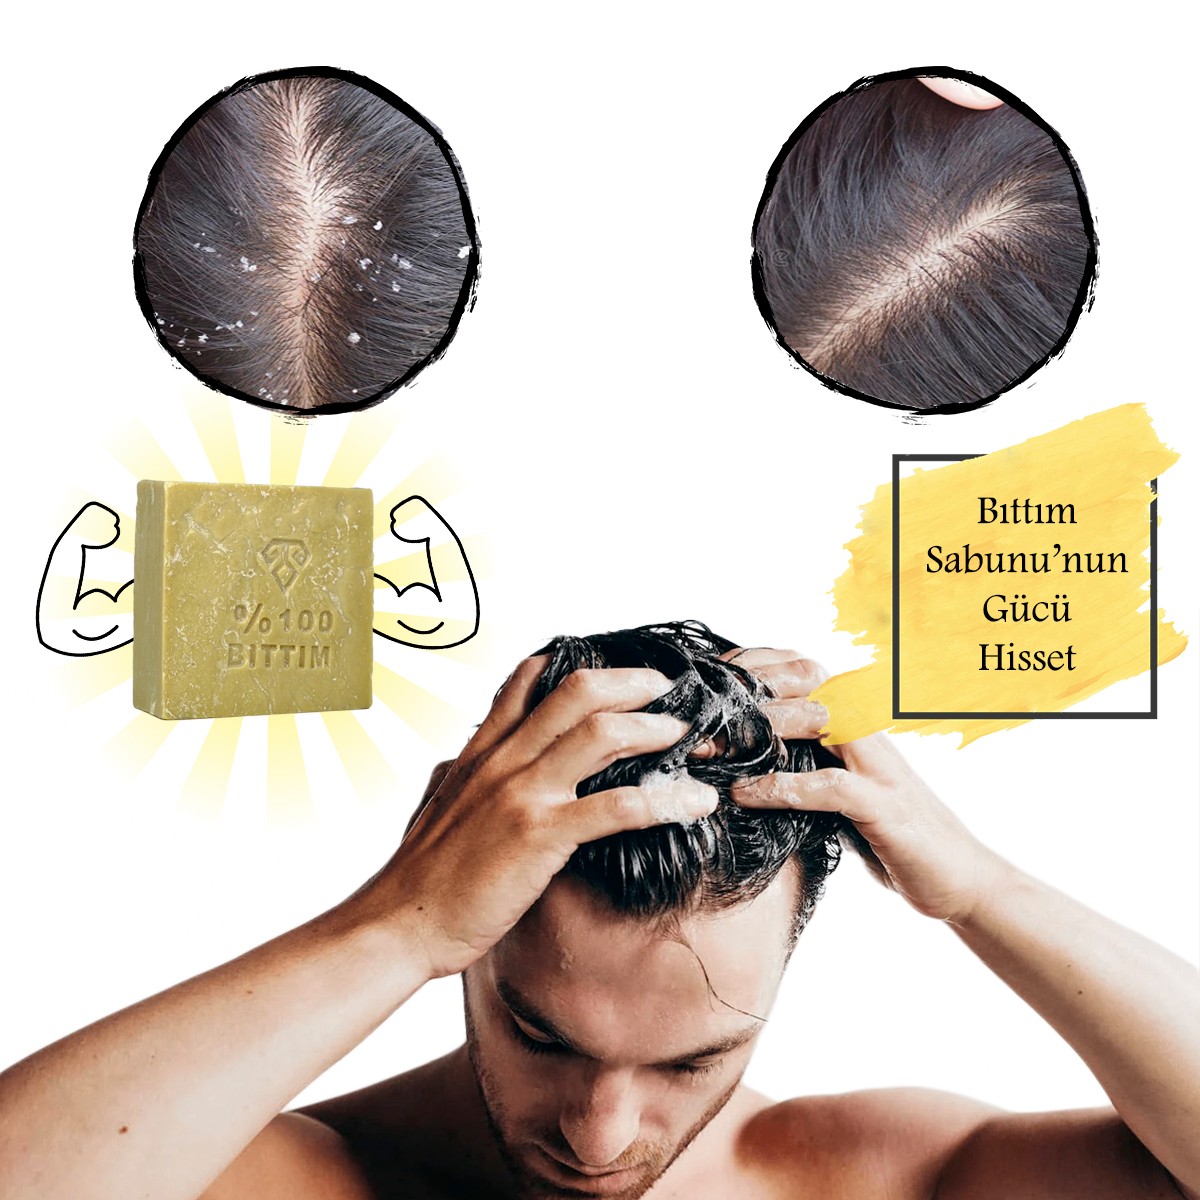 Antioch %100 Bıttım Sabunu Saç Dökülmesi, Yıpranmış, Kepekli Ve Yağlı Saçlar İçin En Doğru Seçimdir.